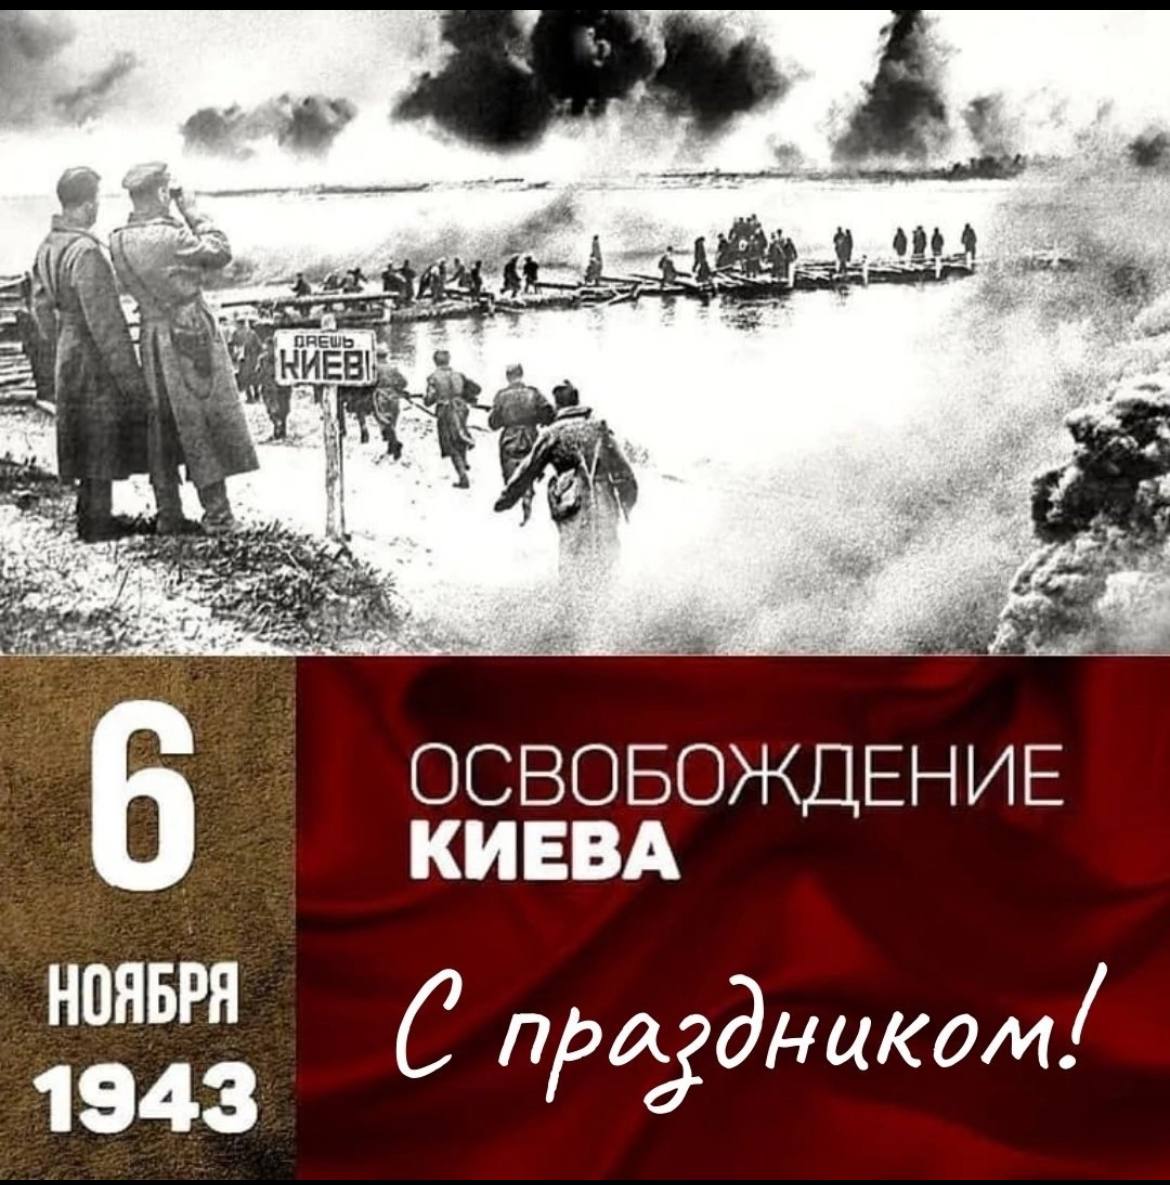 Дата освобождения киева. 6 Ноября 1943 г. Киев освобожден от немецко-фашистских оккупантов. Освобождение столицы Украины Киева (6 ноября 1943 г.). Ноябрь 1943 освобождение Киева. 6 Ноября 1943 г советские войска освободили Киев.